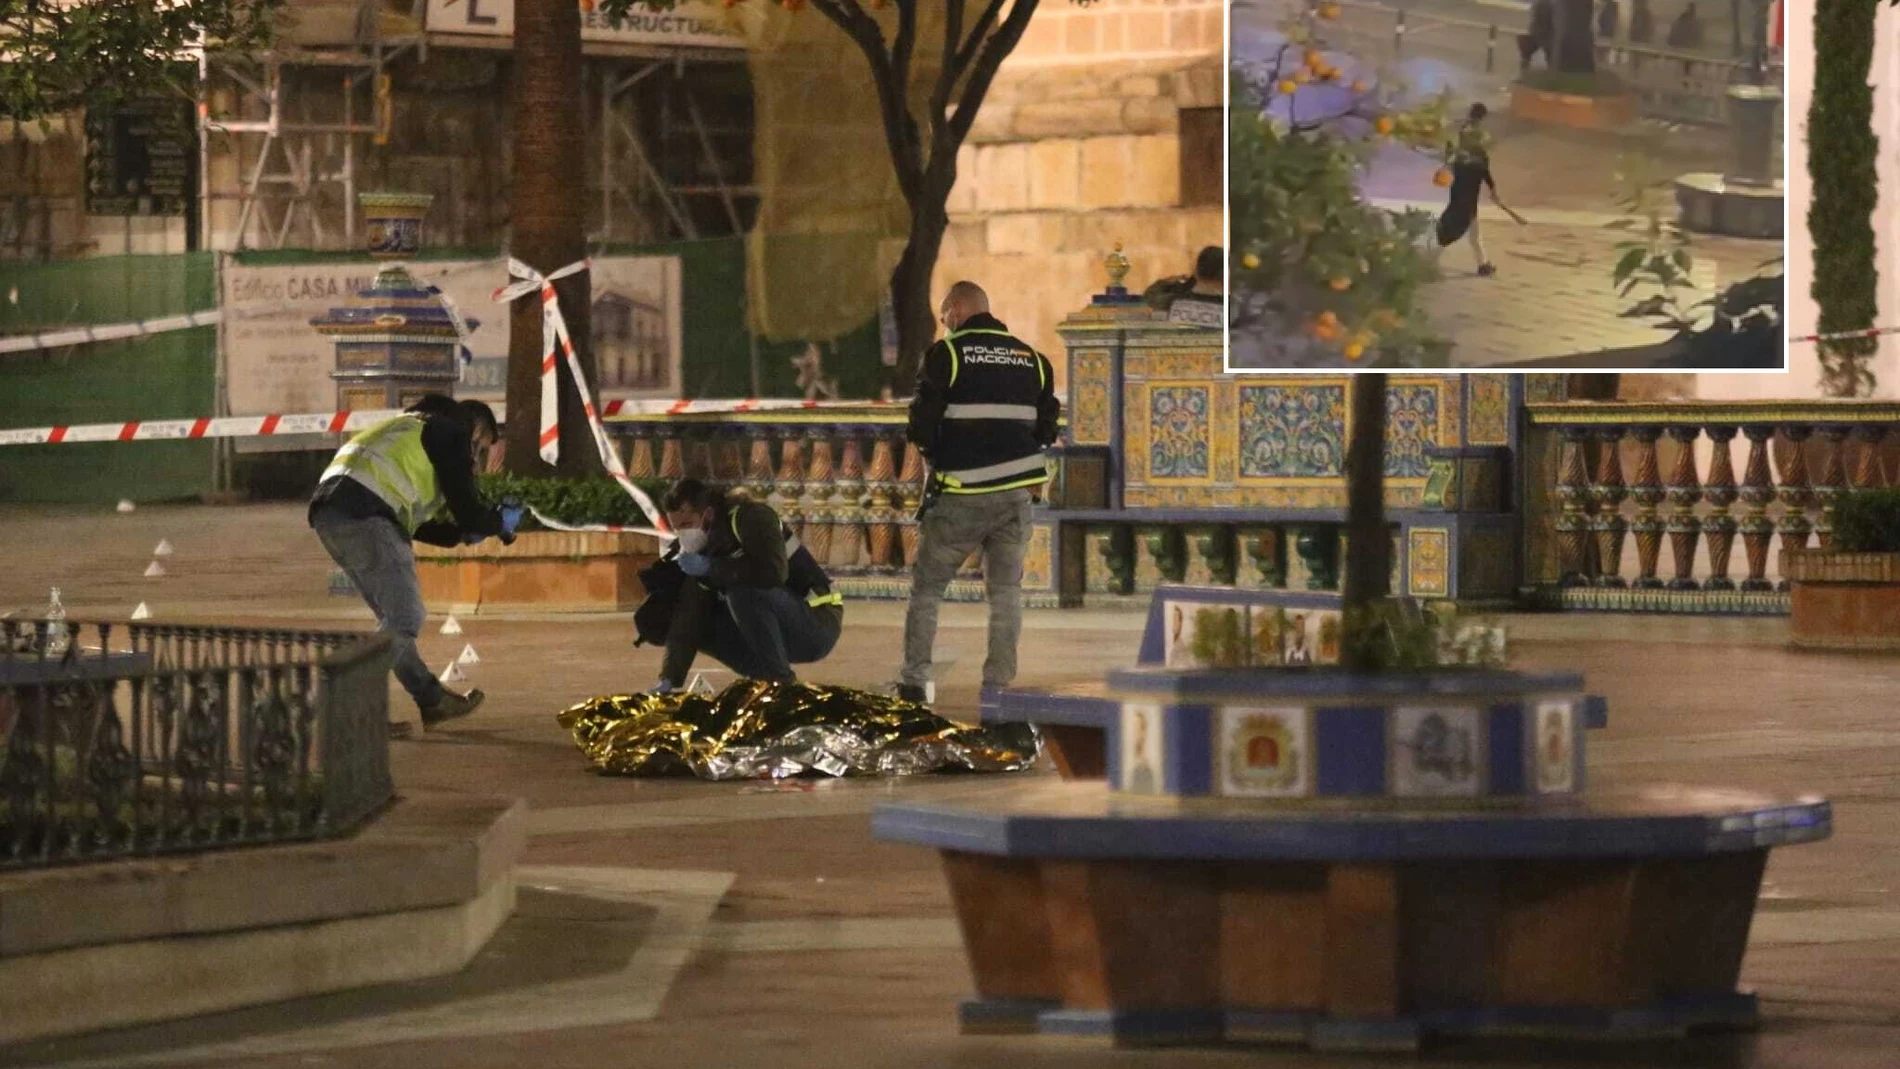 Efectivos sanitarios y policiales cubren el cadáver del sacristán fallecido en Algeciras. En el recuadro, el presunto asesino pasea con el machete tras cometer el atentado.